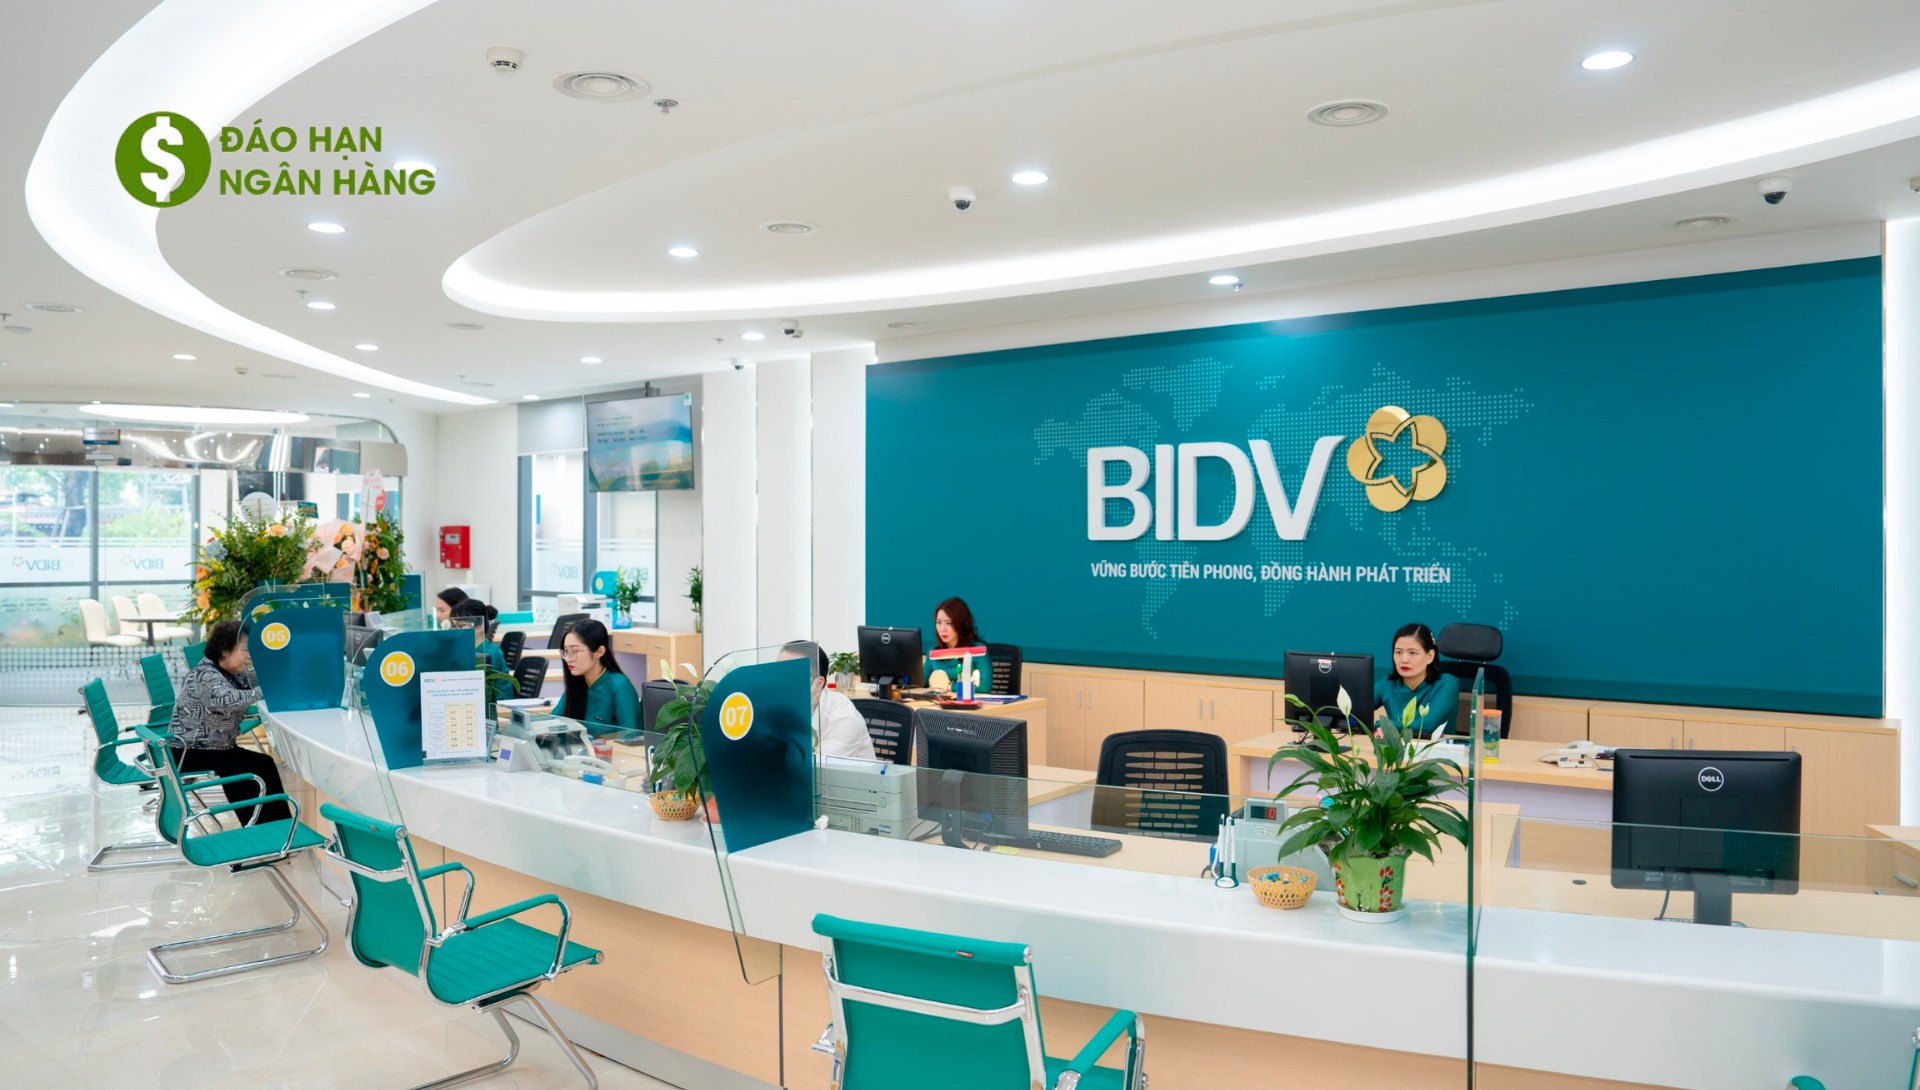 Thủ tục, quy trình cho vay trả nợ ngân hàng khác của BIDV